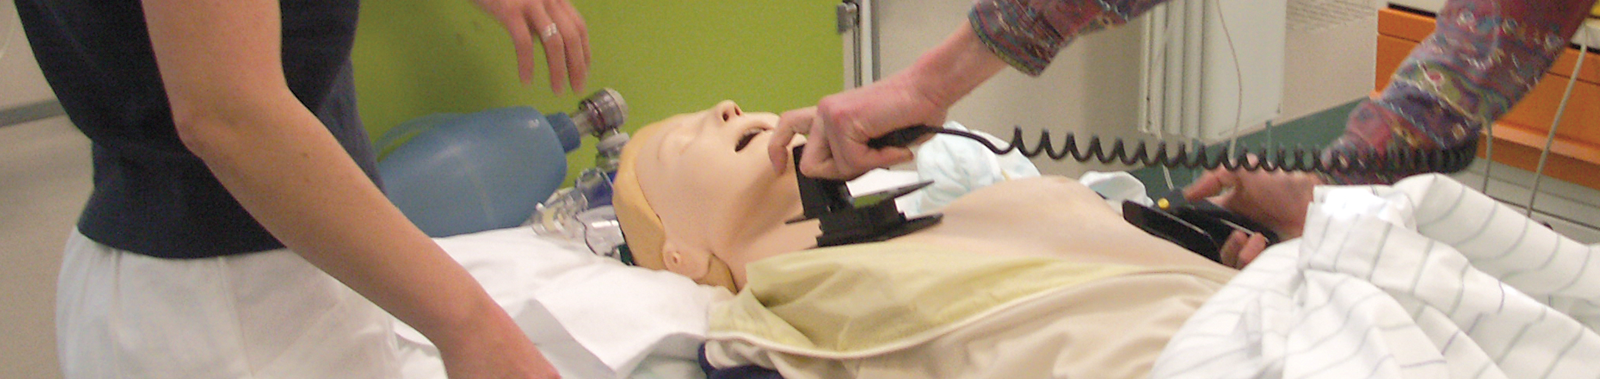 Defibrillation an einer Trainingspuppe